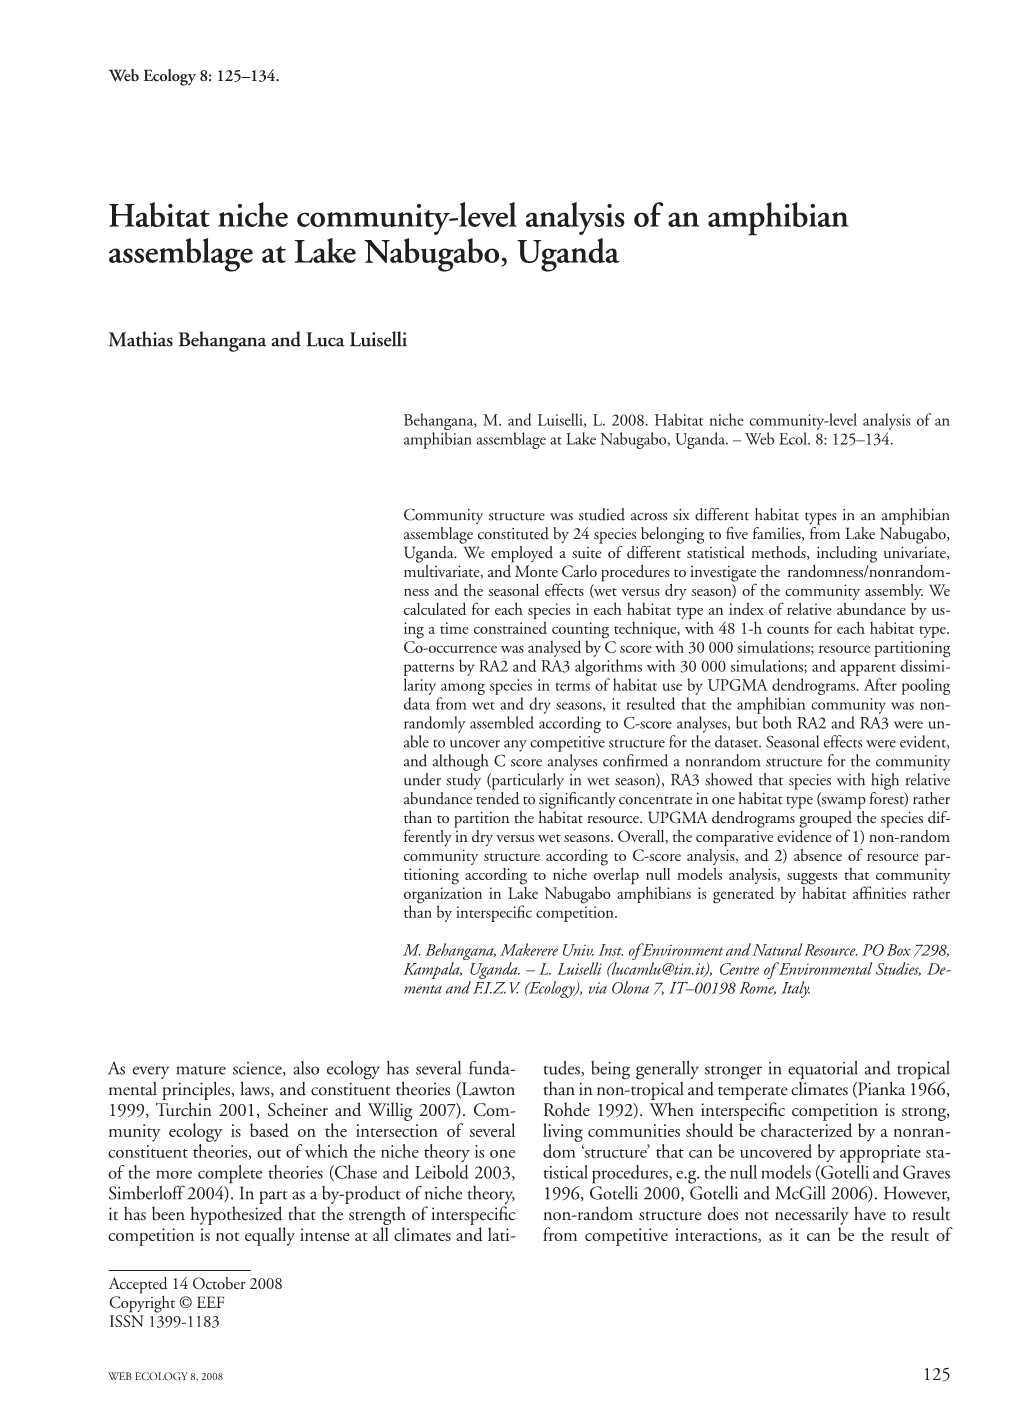 Habitat Niche Community-Level Analysis of an Amphibian Assemblage at Lake Nabugabo, Uganda